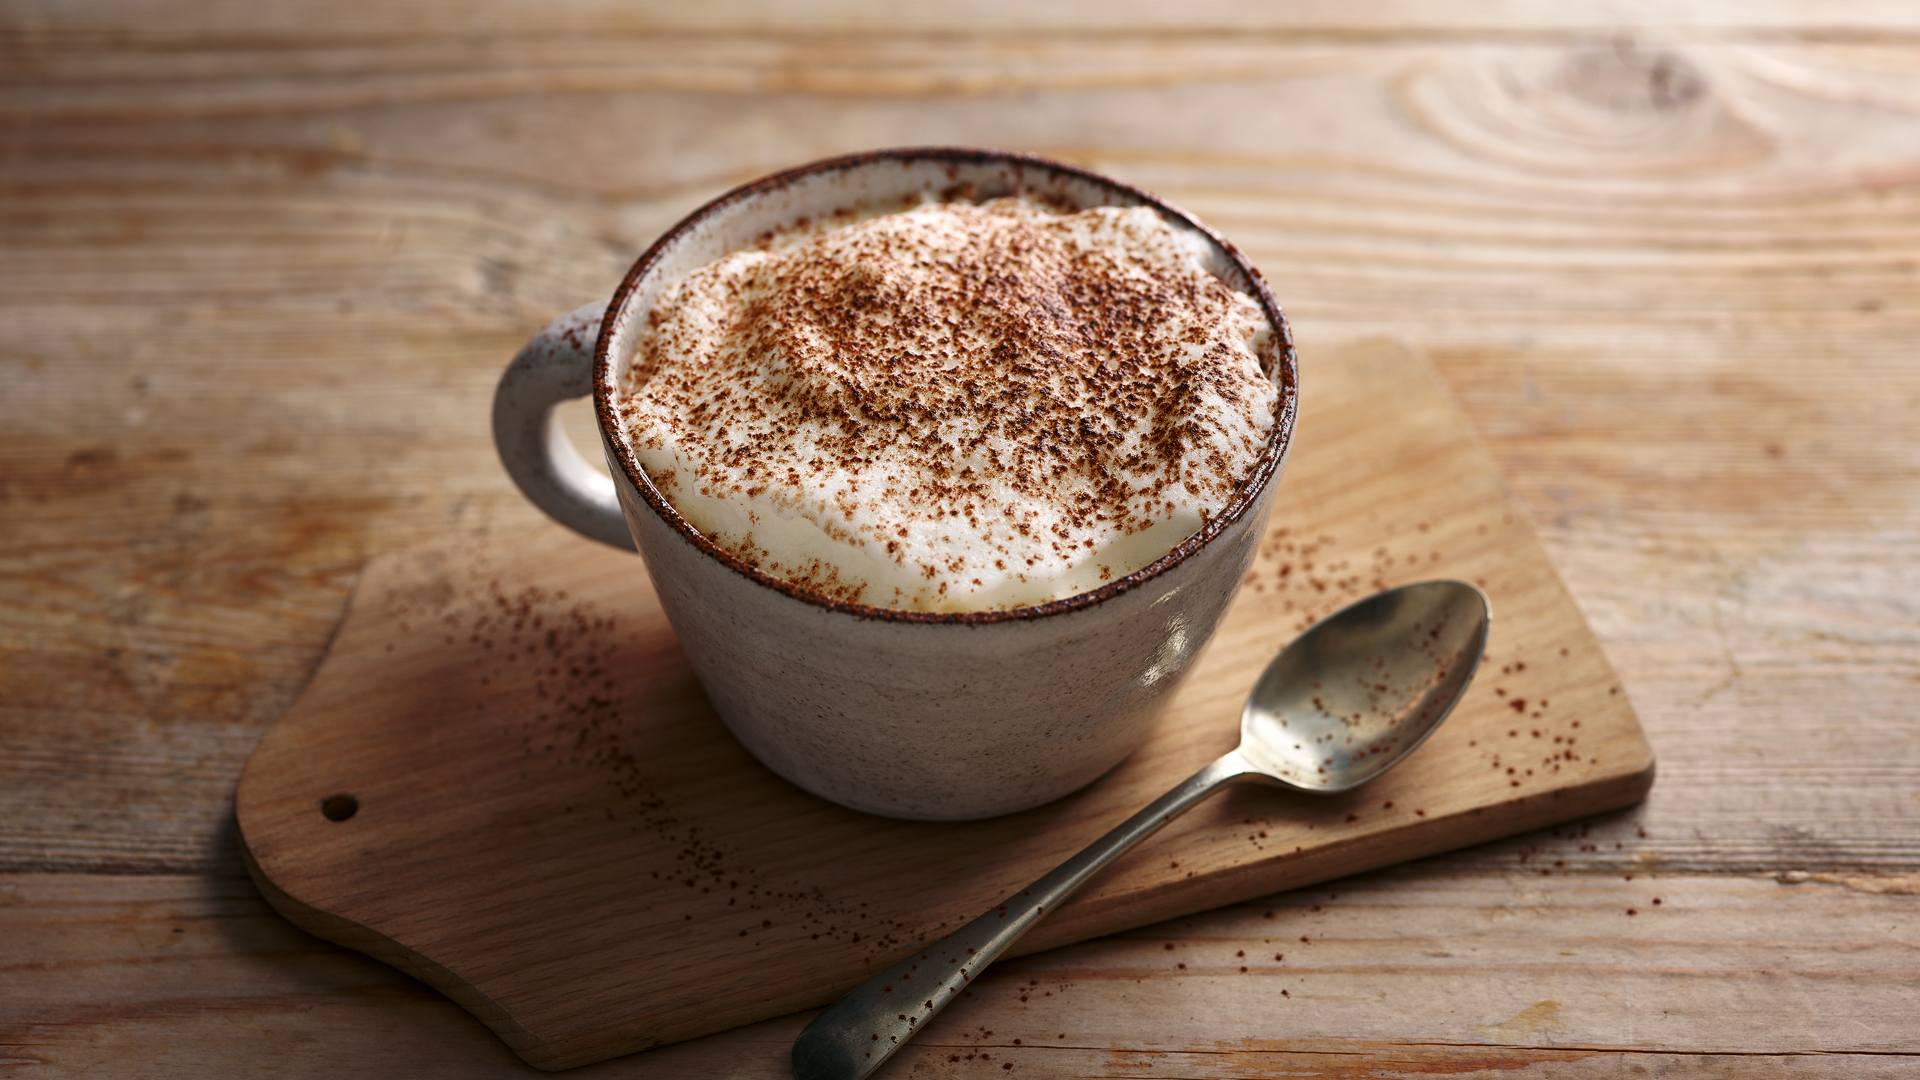 Các loại cafe như capuchino, mocha hay latte đều có thêm kem béo, sữa và đường nên sẽ không có tác dụng giảm cân như cafe đen